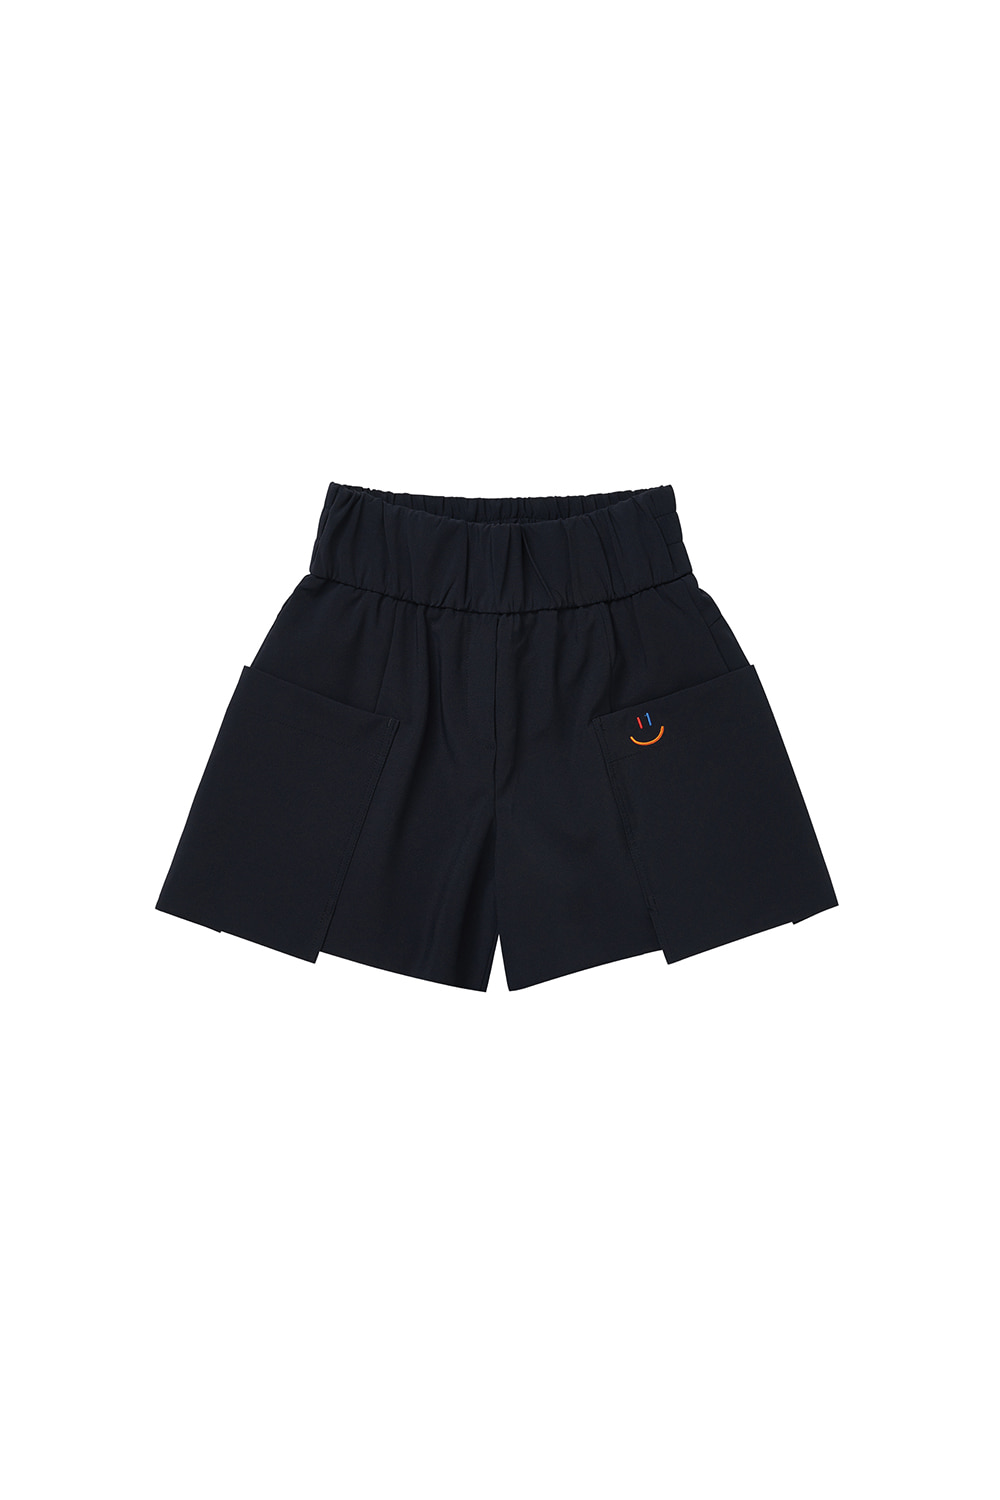 LaLa Short Pants [Navy]